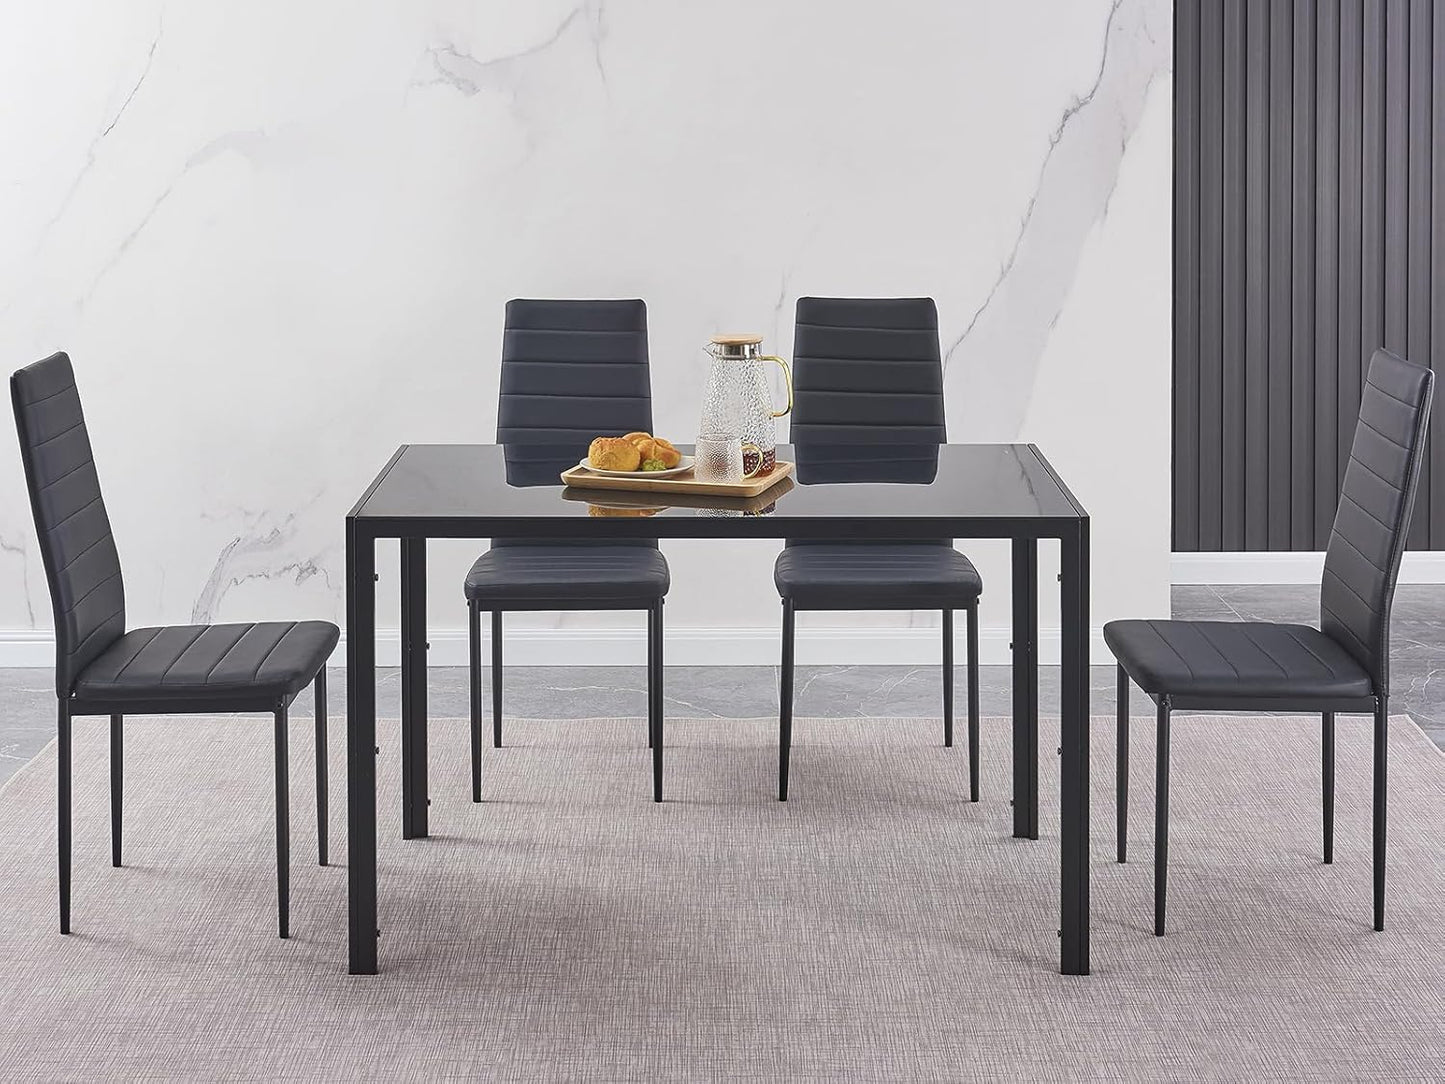 Mesa de comedor negra con sillas, juego de mesa rectangular para 4 mesas de